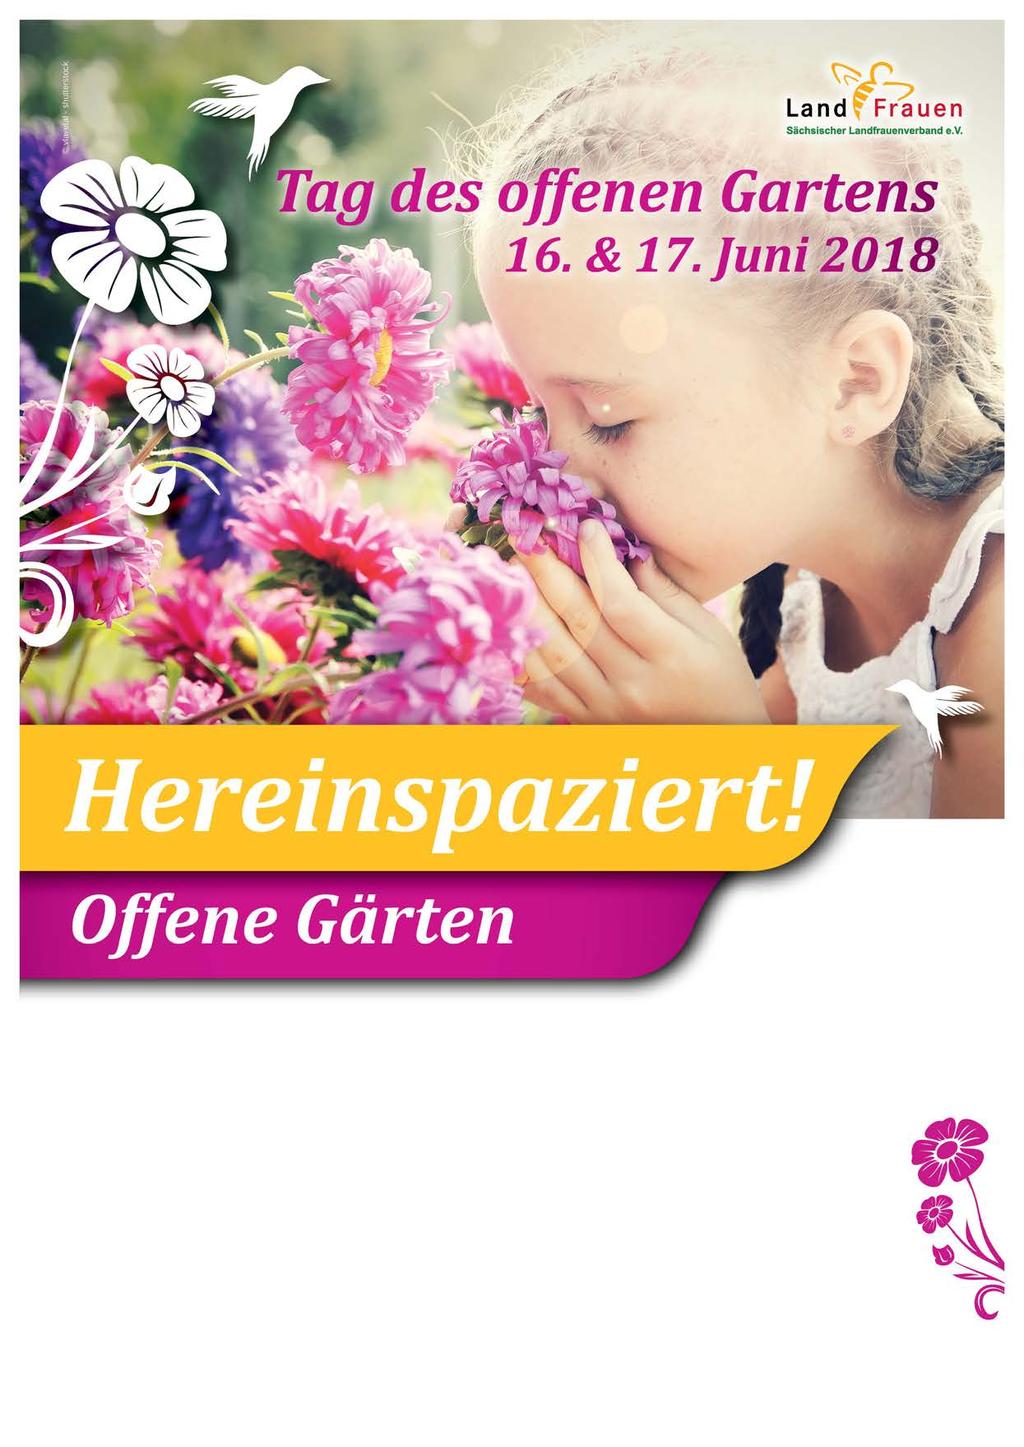 Garten von Birgit Beecken Obere Straße 13, 01594 Stauchitz OT Grubnitz Tel.